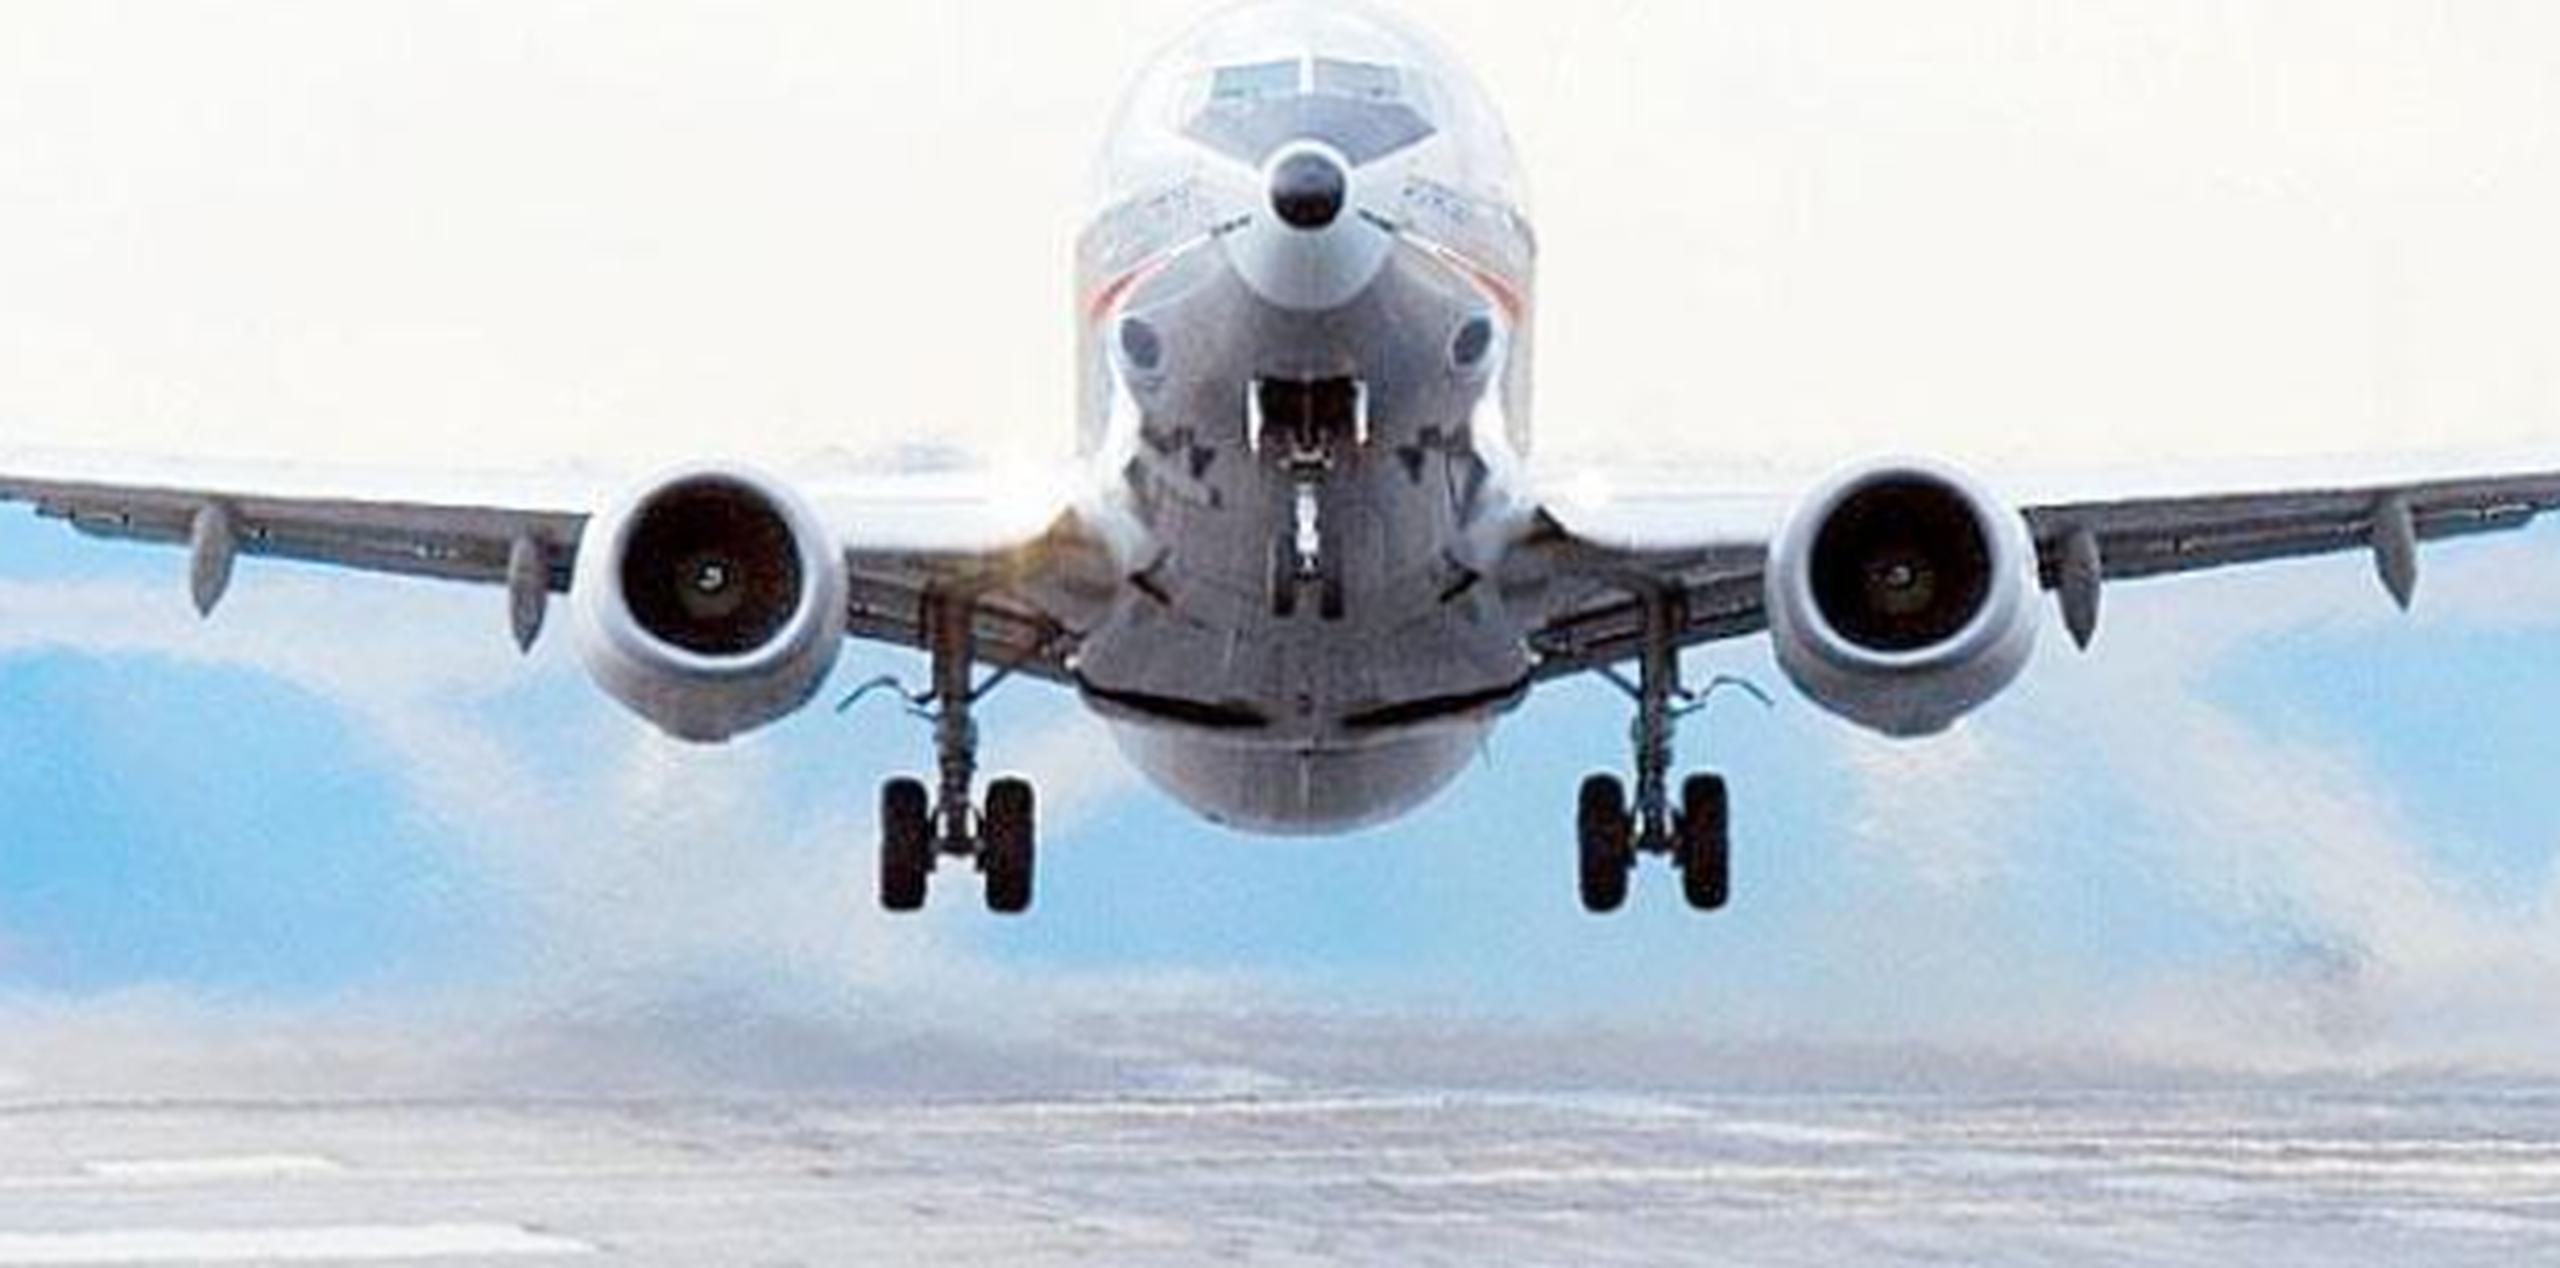 Air Transat realiza vuelos chárter y regulares entre Canadá y varios destinos europeos y caribeños. (Archivo)